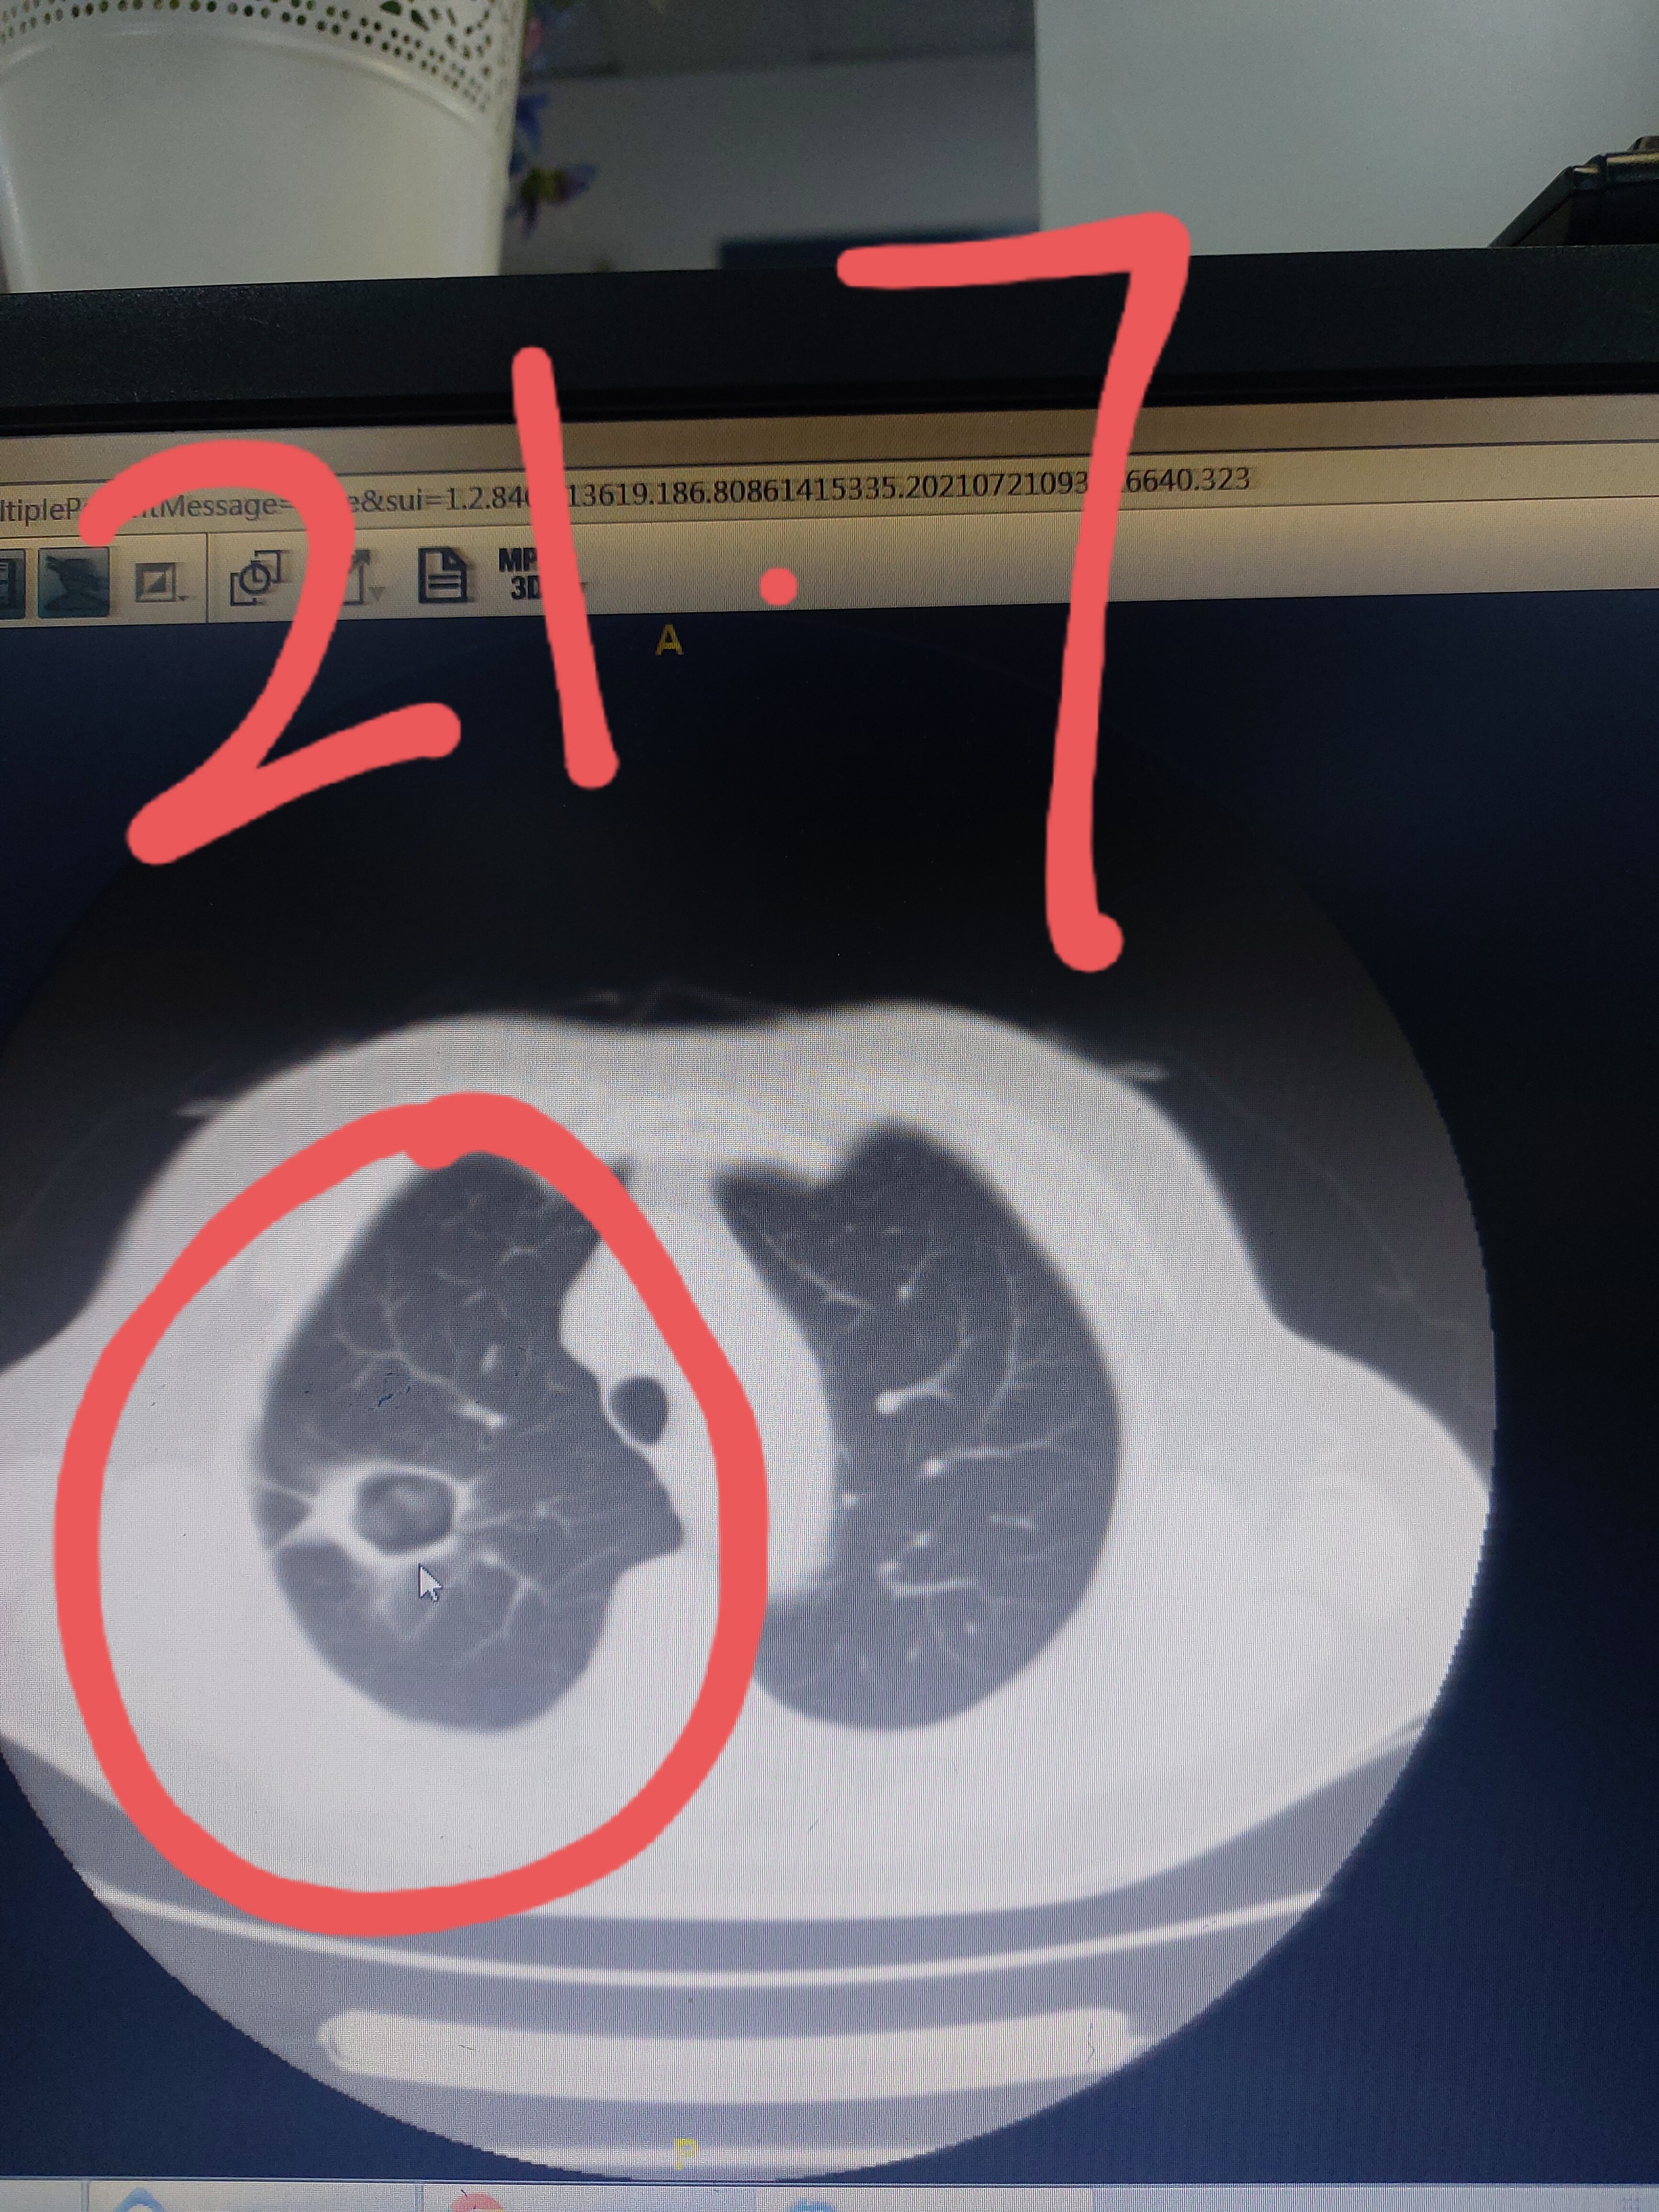 中分化肺鳞癌图片